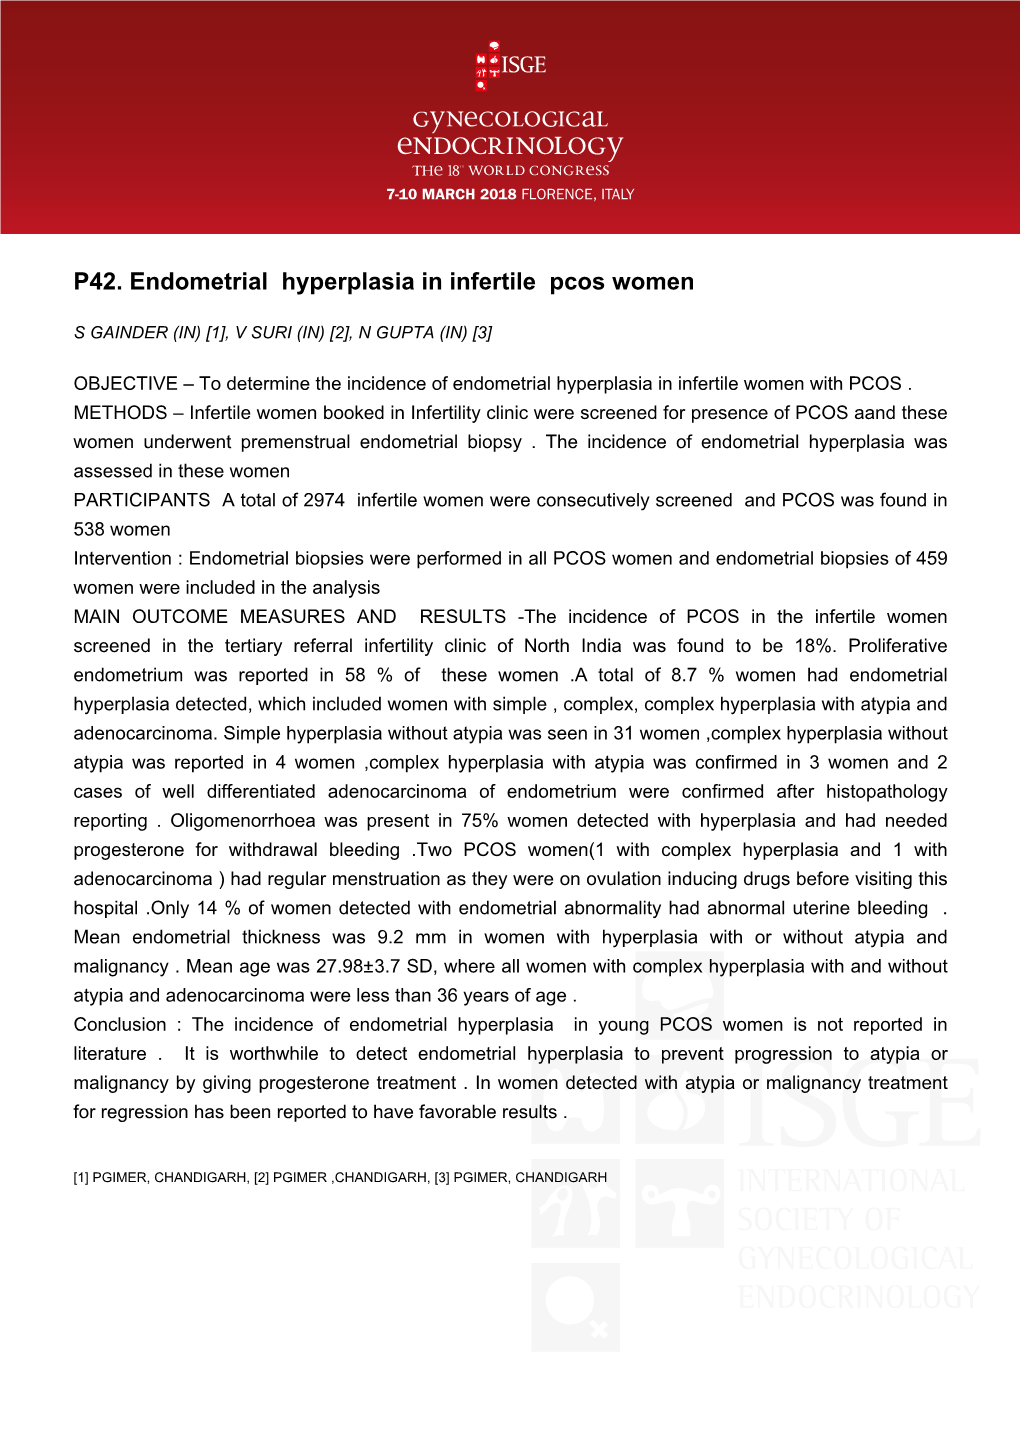 P42. Endometrial Hyperplasia in Infertile Pcos Women